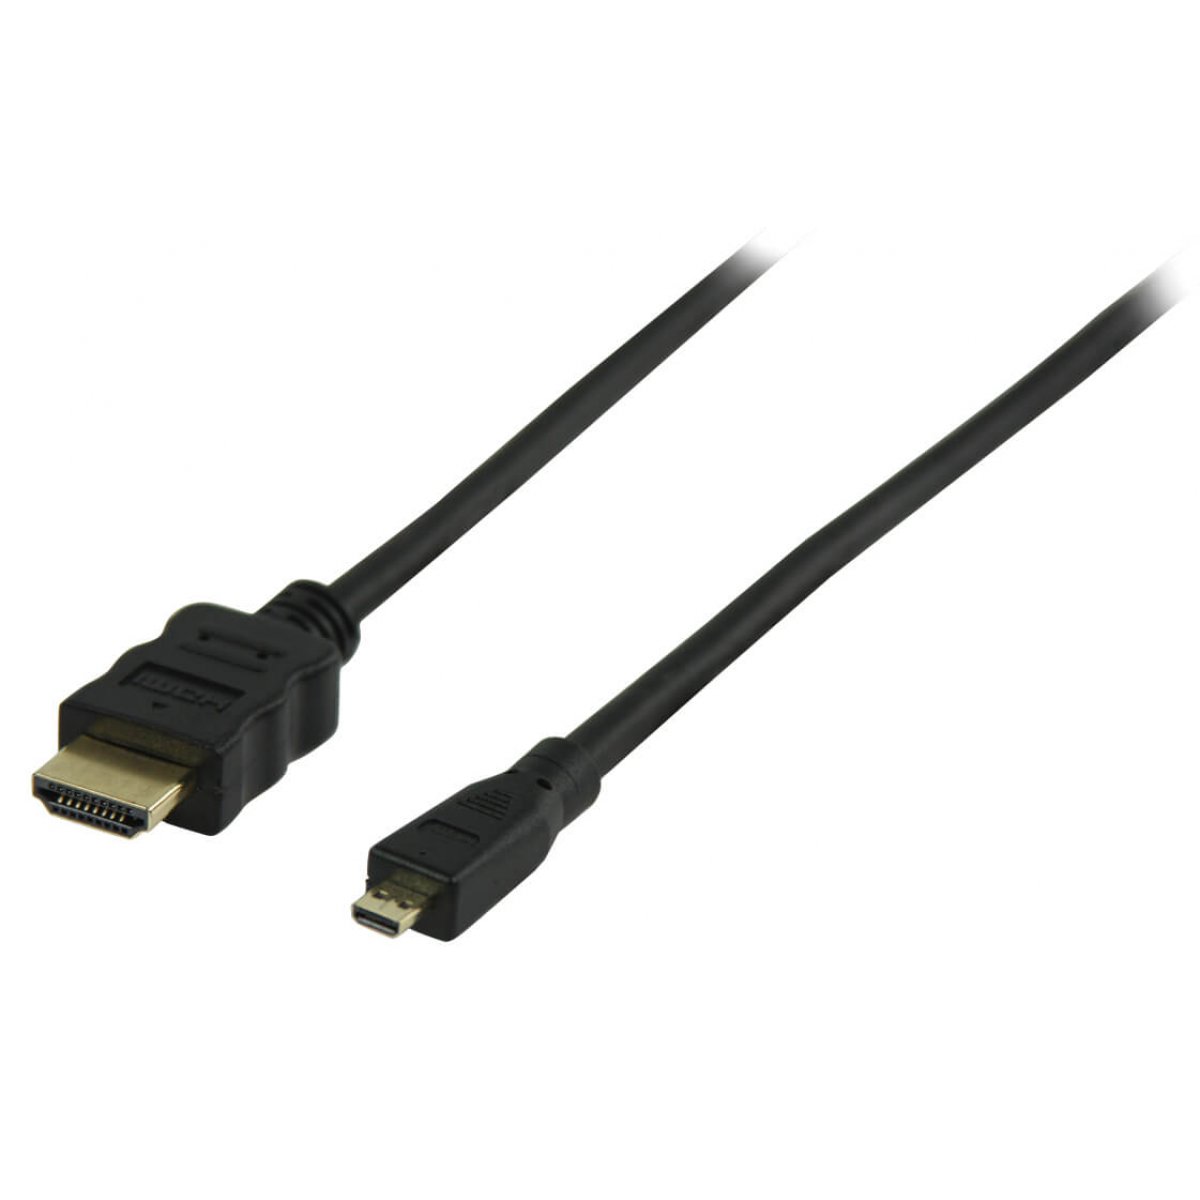 CABLE HDMI/M - MICRO HDMI/M (1.5M)